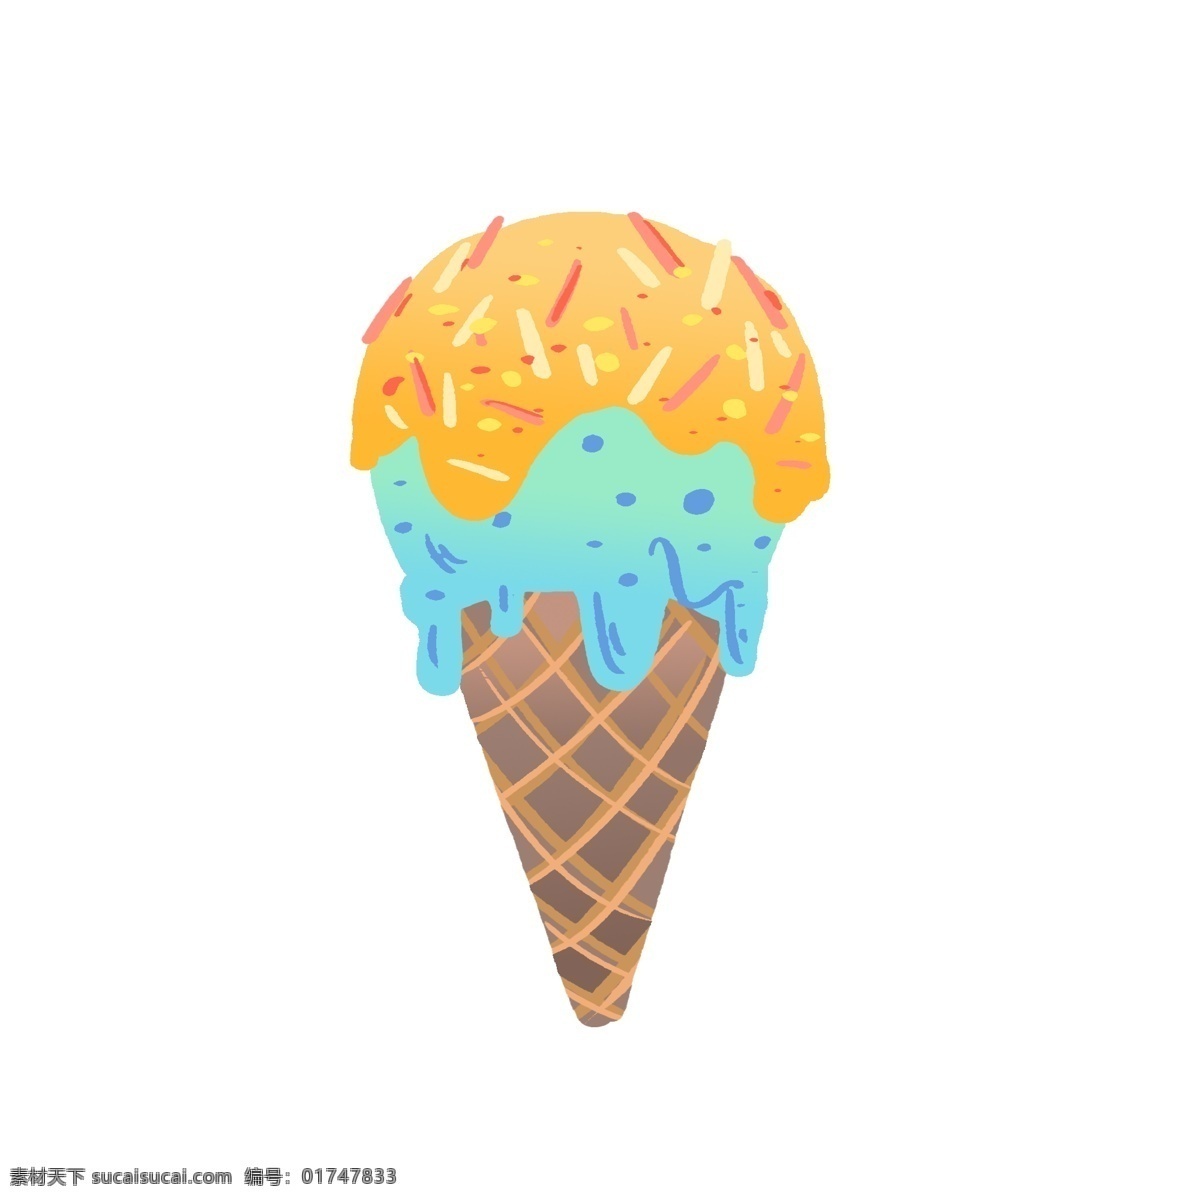 夏天 夏季 冷饮 甜点 冰激凌 夏日 甜品 饮品 装饰 蓝色 黄色 蛋筒 海报 水果 手账